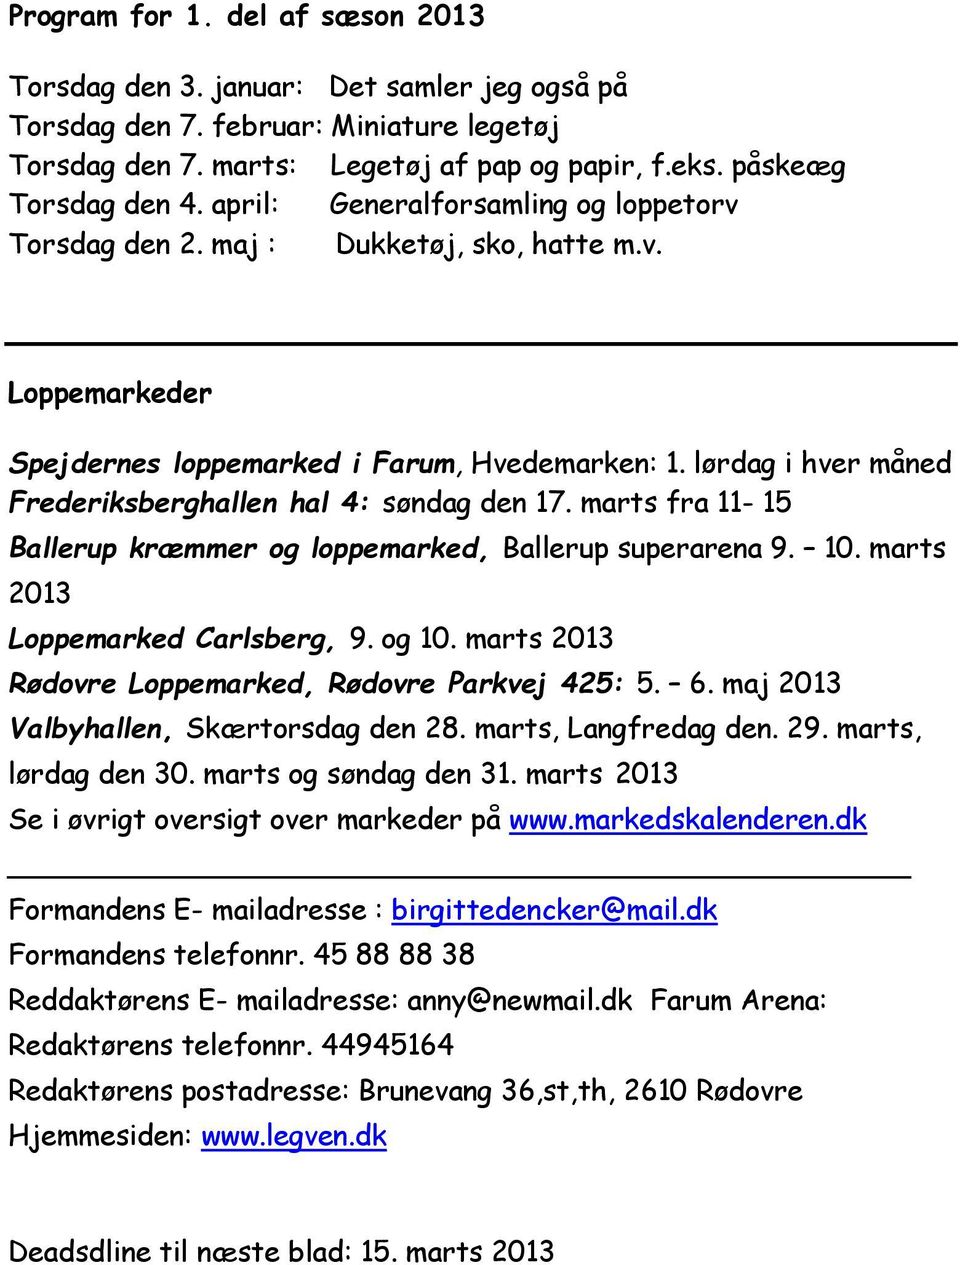 lørdag i hver måned Frederiksberghallen hal 4: søndag den 17. marts fra 11-15 Ballerup kræmmer og loppemarked, Ballerup superarena 9. 10. marts 2013 Loppemarked Carlsberg, 9. og 10.